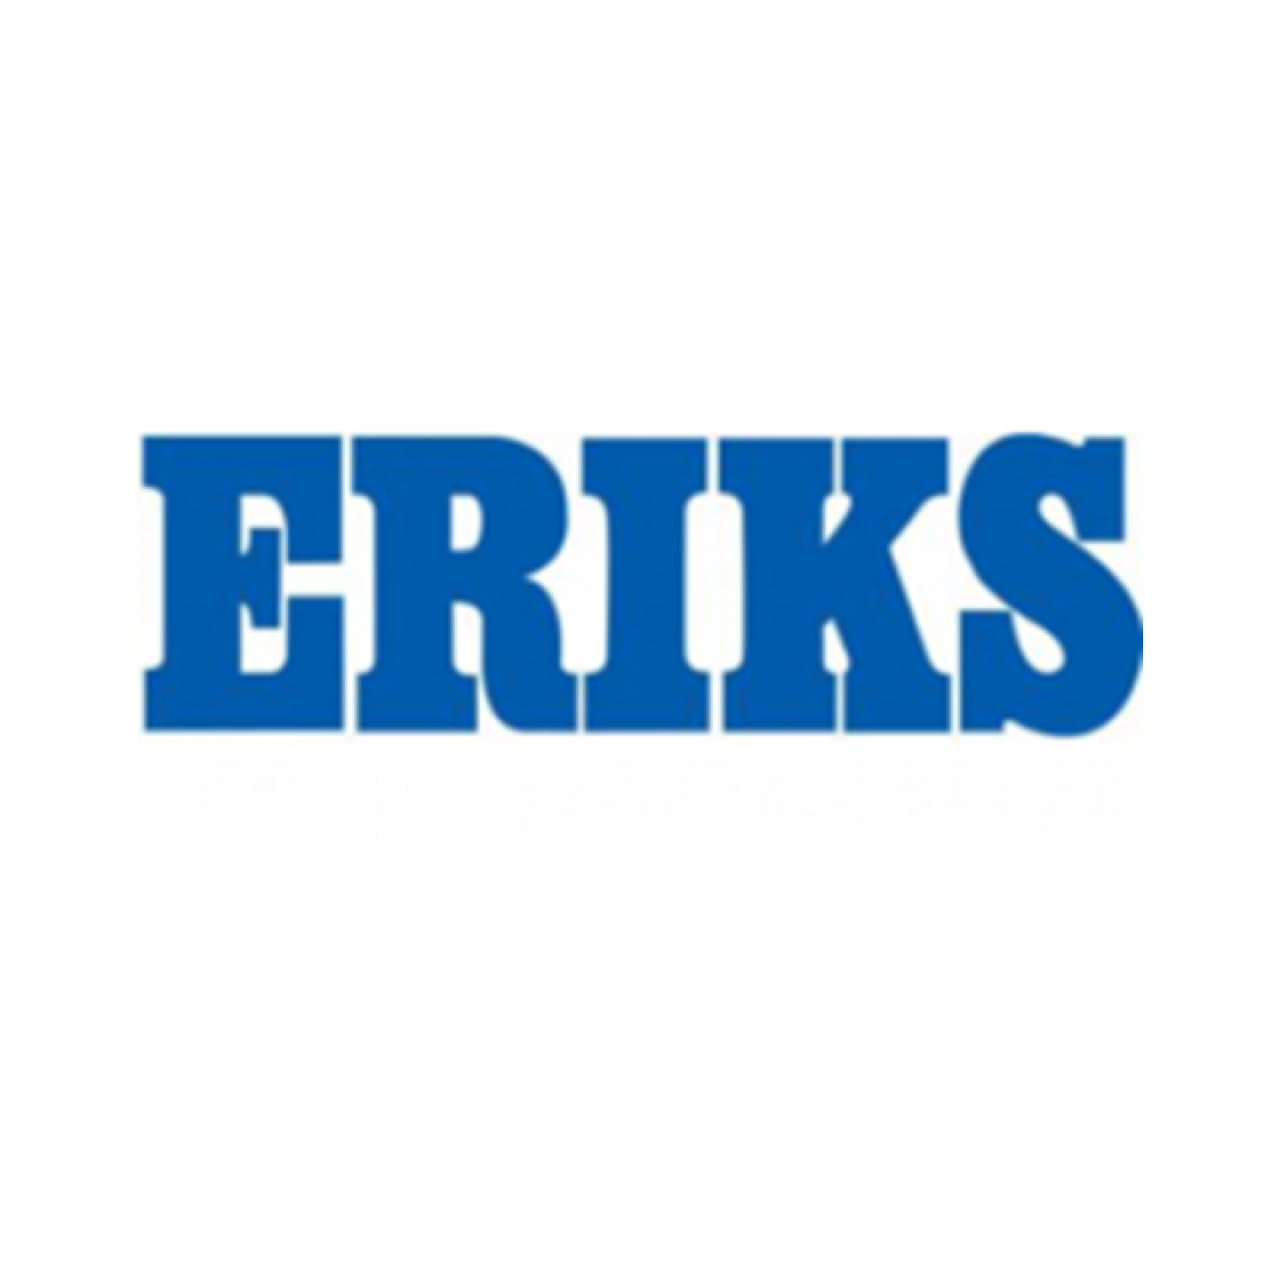 Eriks logo.